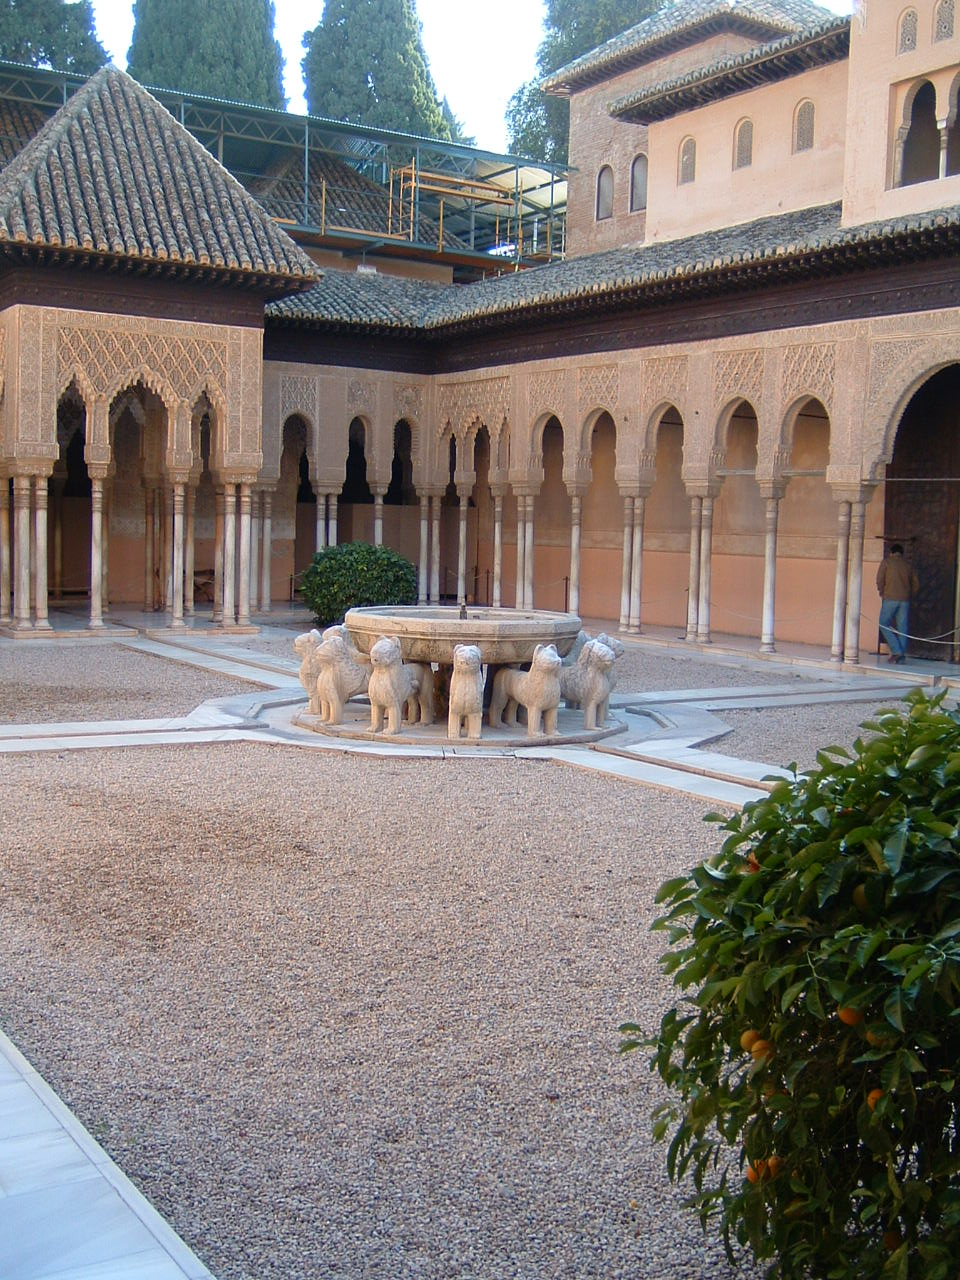 El patio de los leones de la Alhambra